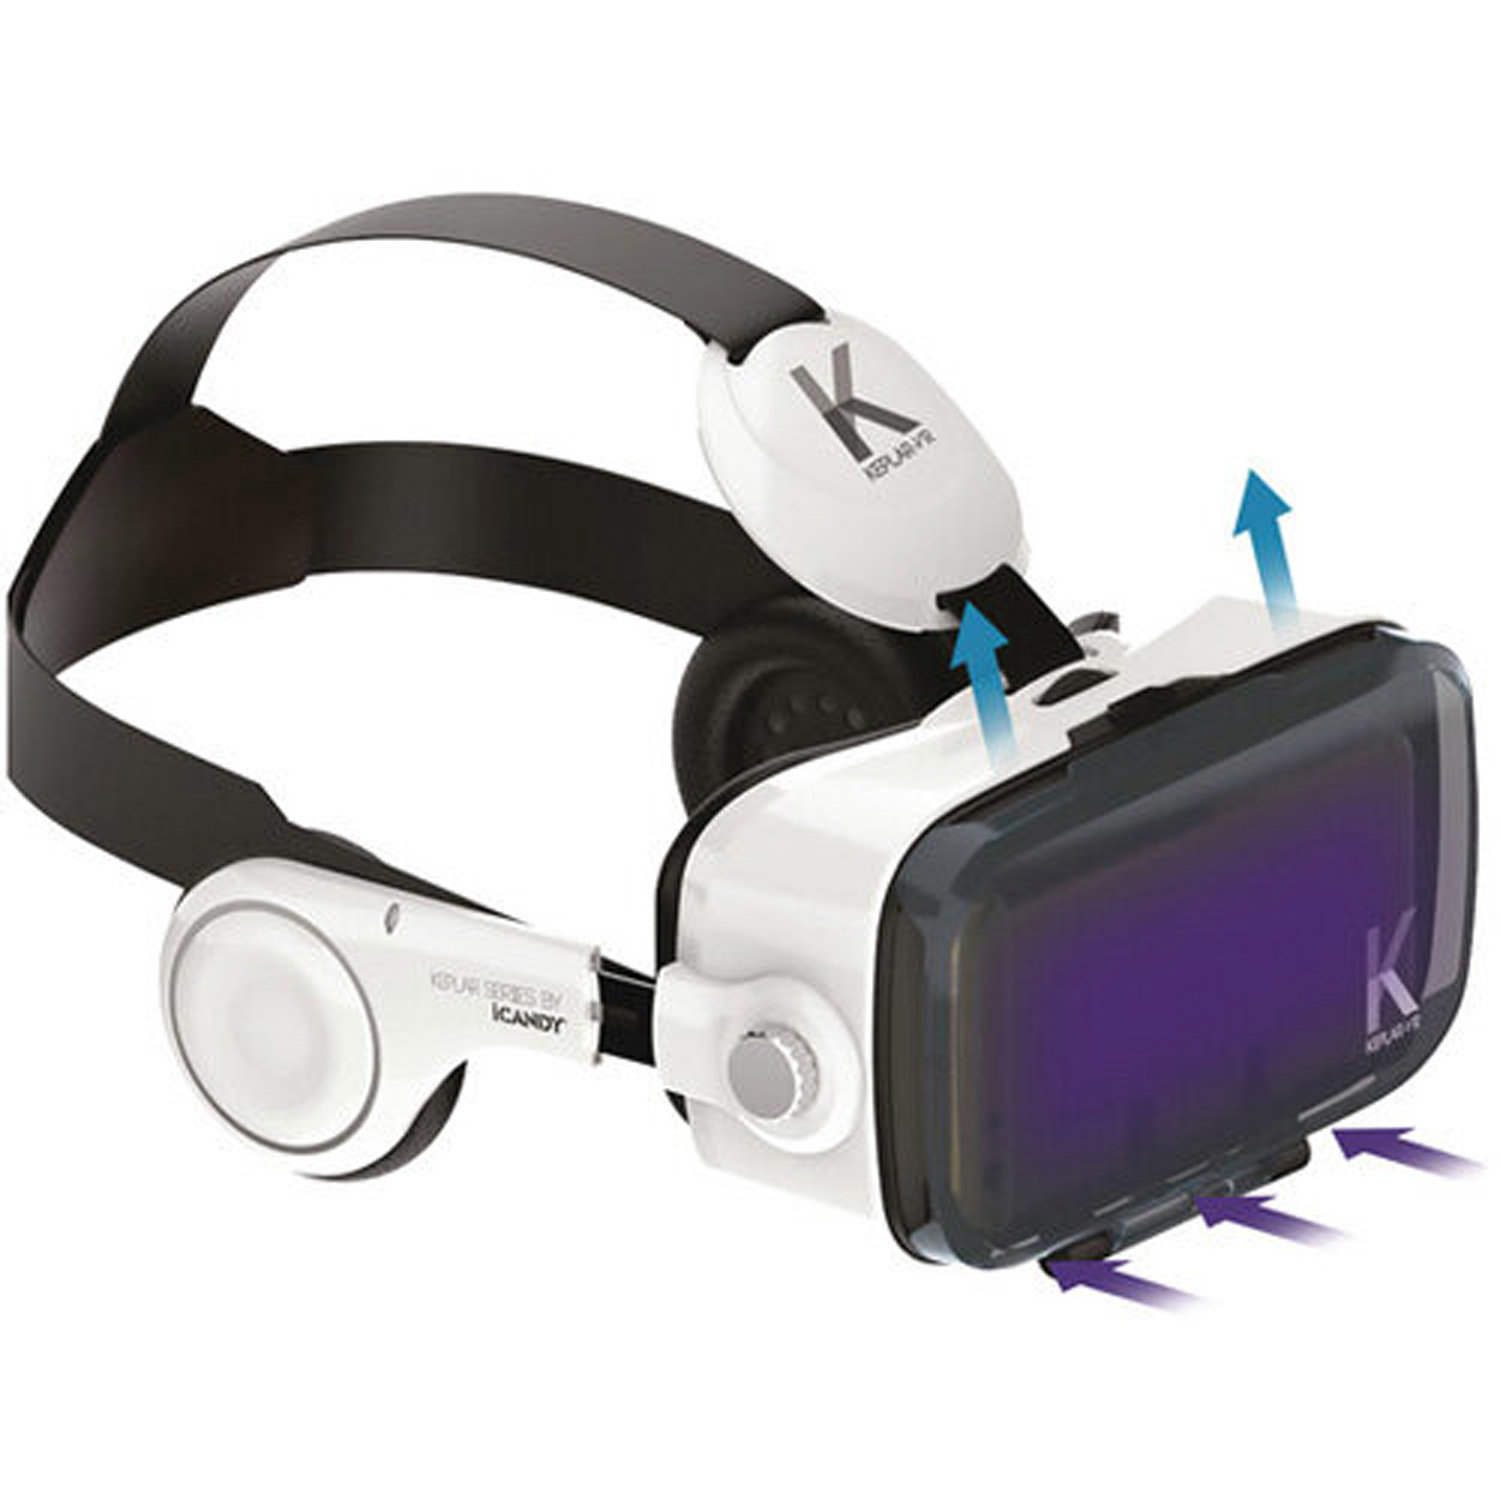 Keplar Immersion Universal VR Schutzbrillen für iOS & Android Smartphones